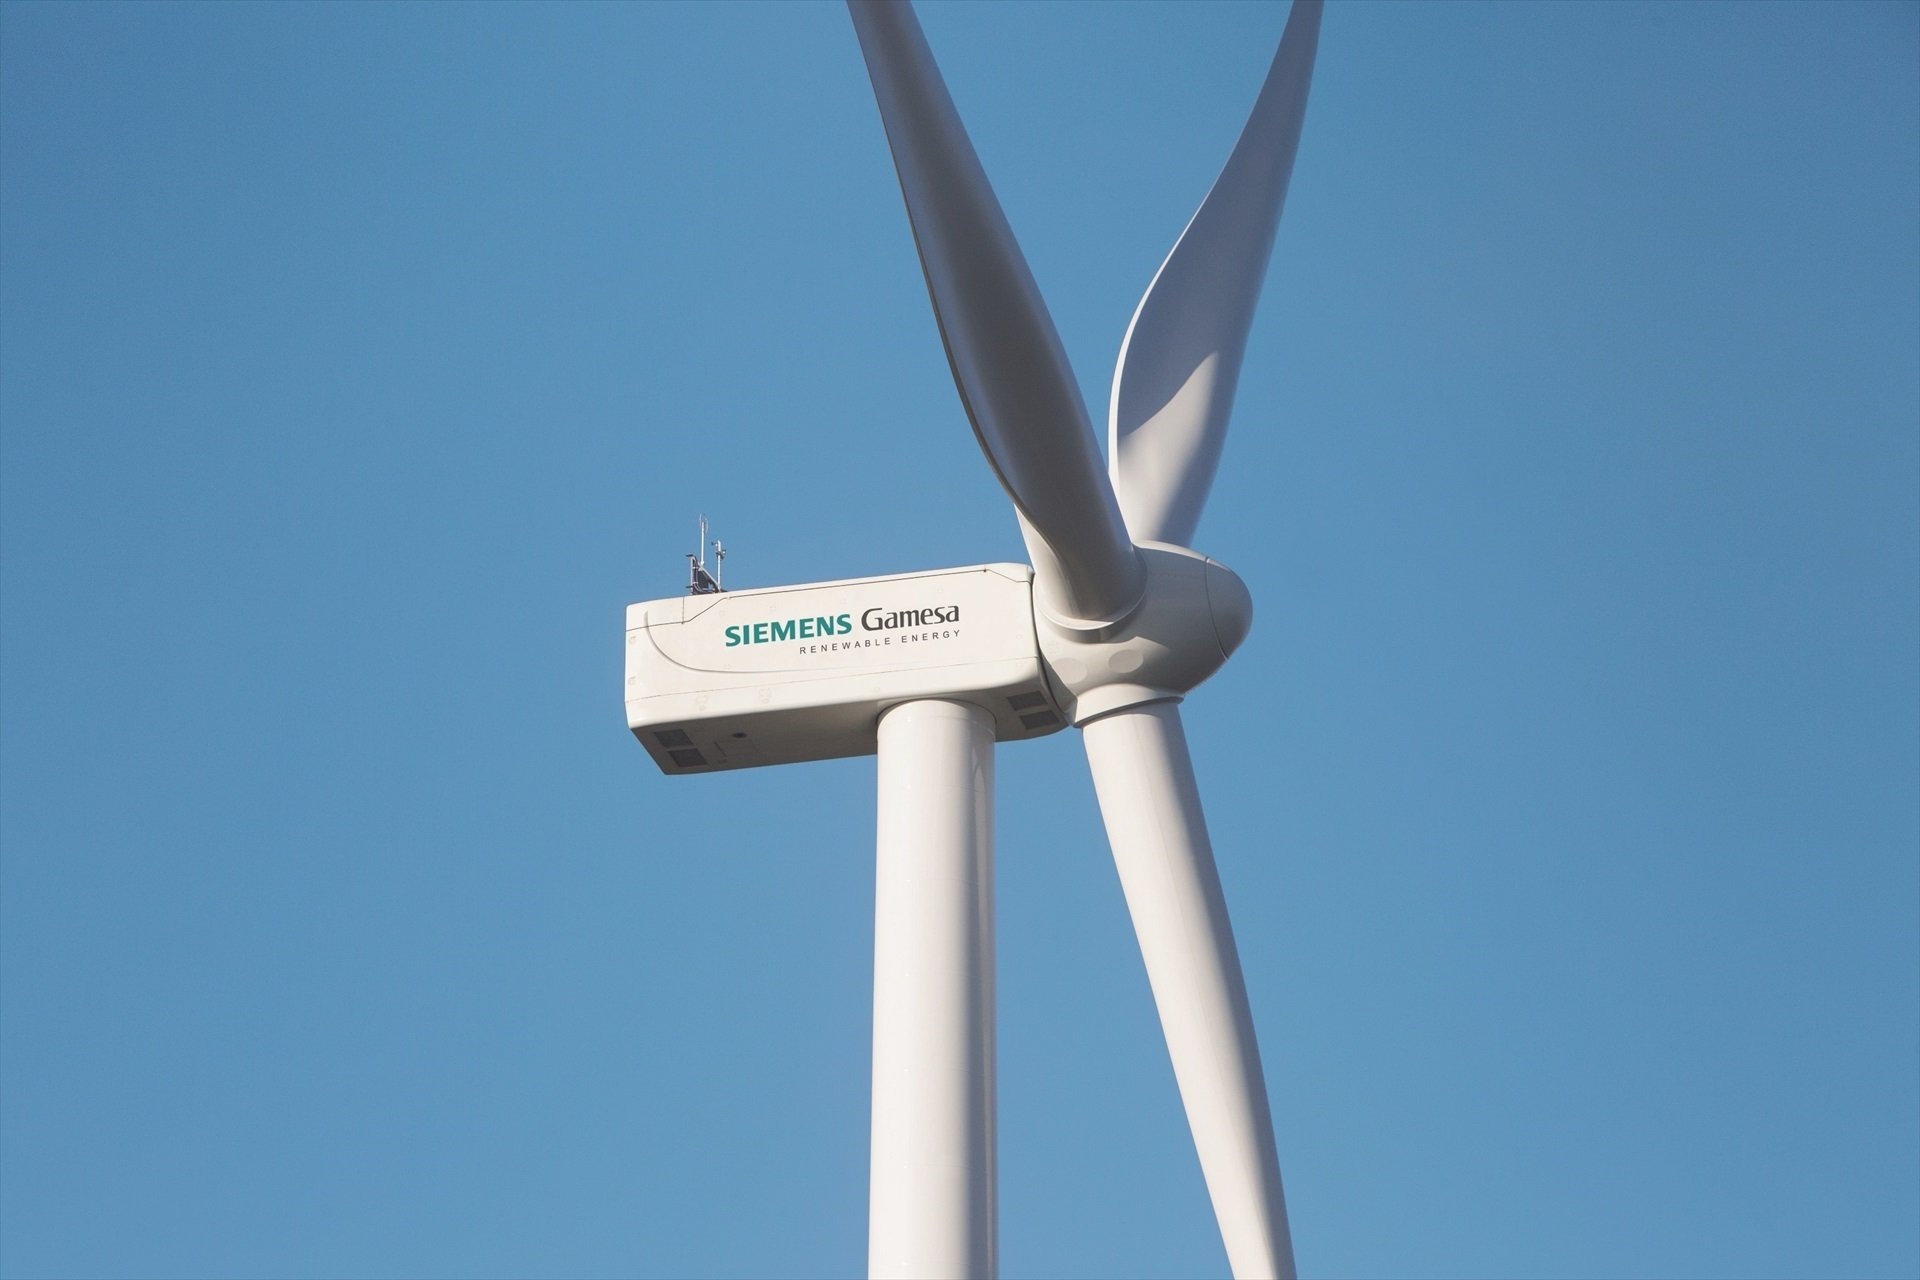 ¿Qué va a pasar con Siemens Gamesa?